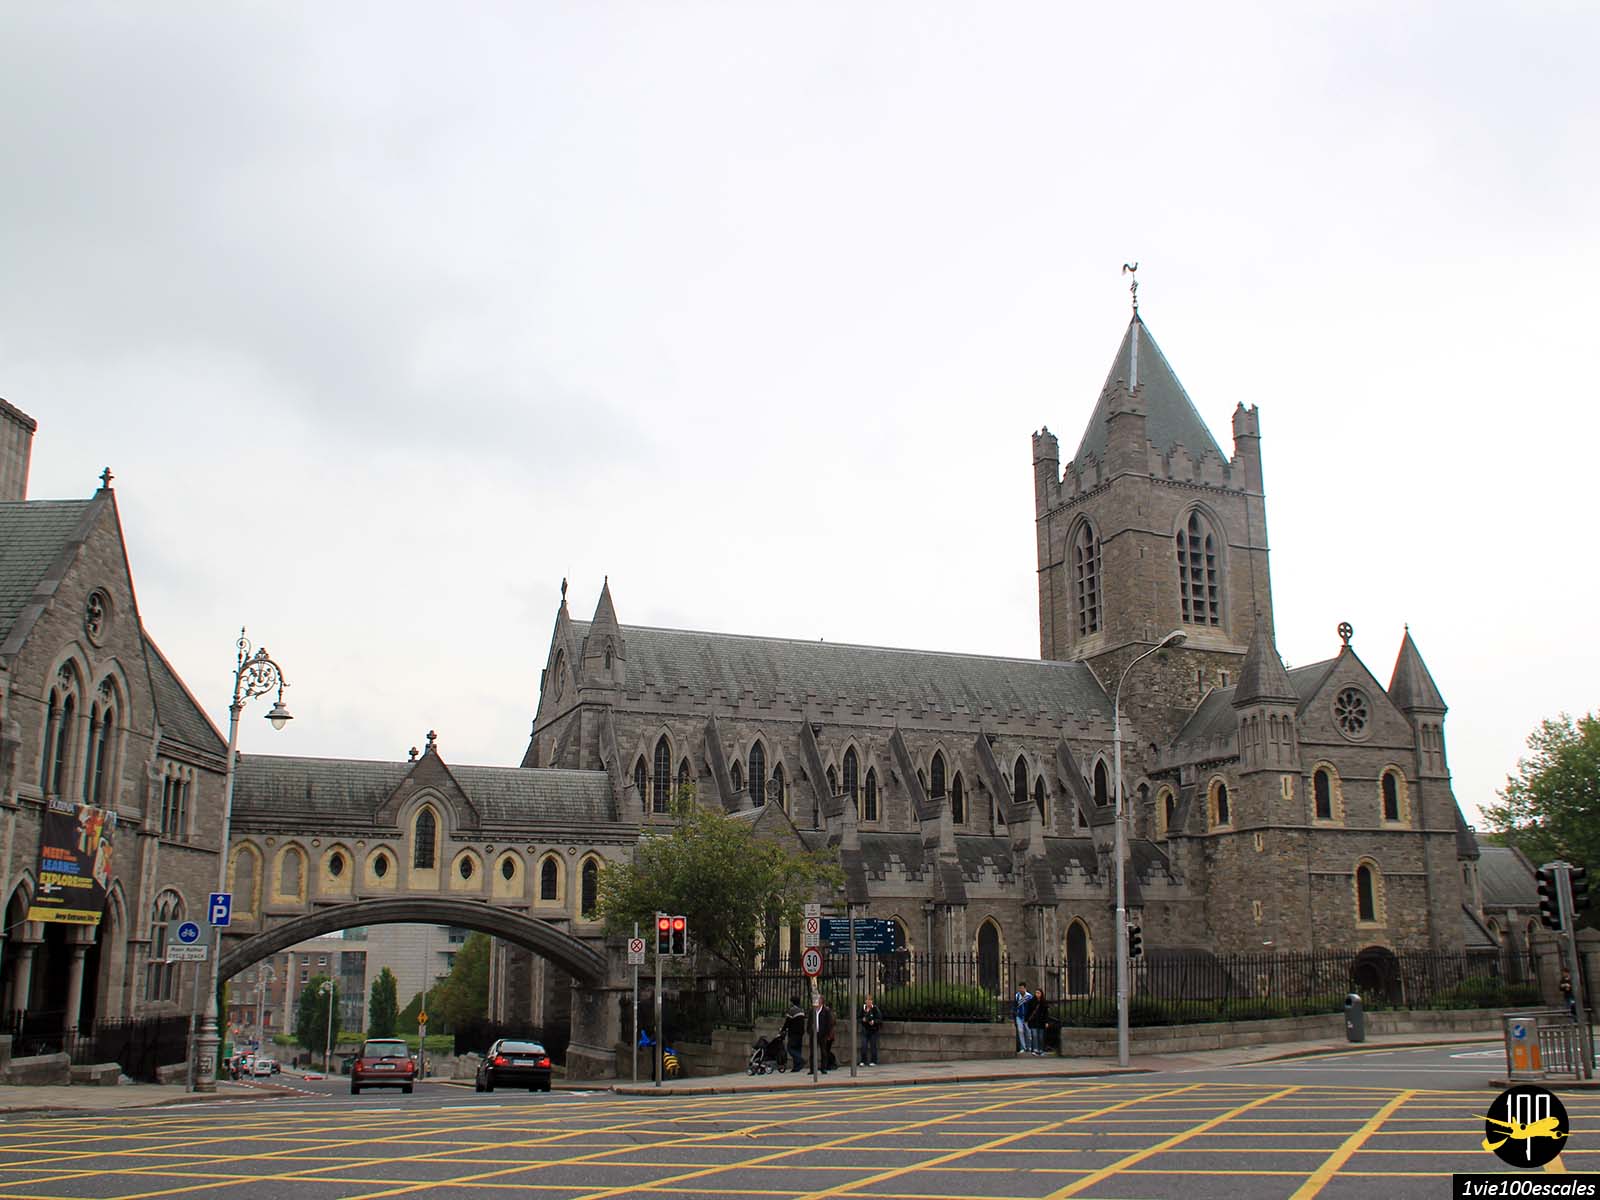 Siège de l'évêché anglican, la cathédrale Christ Church de Dublin est aussi appelée cathédrale de la Sainte-Trinité